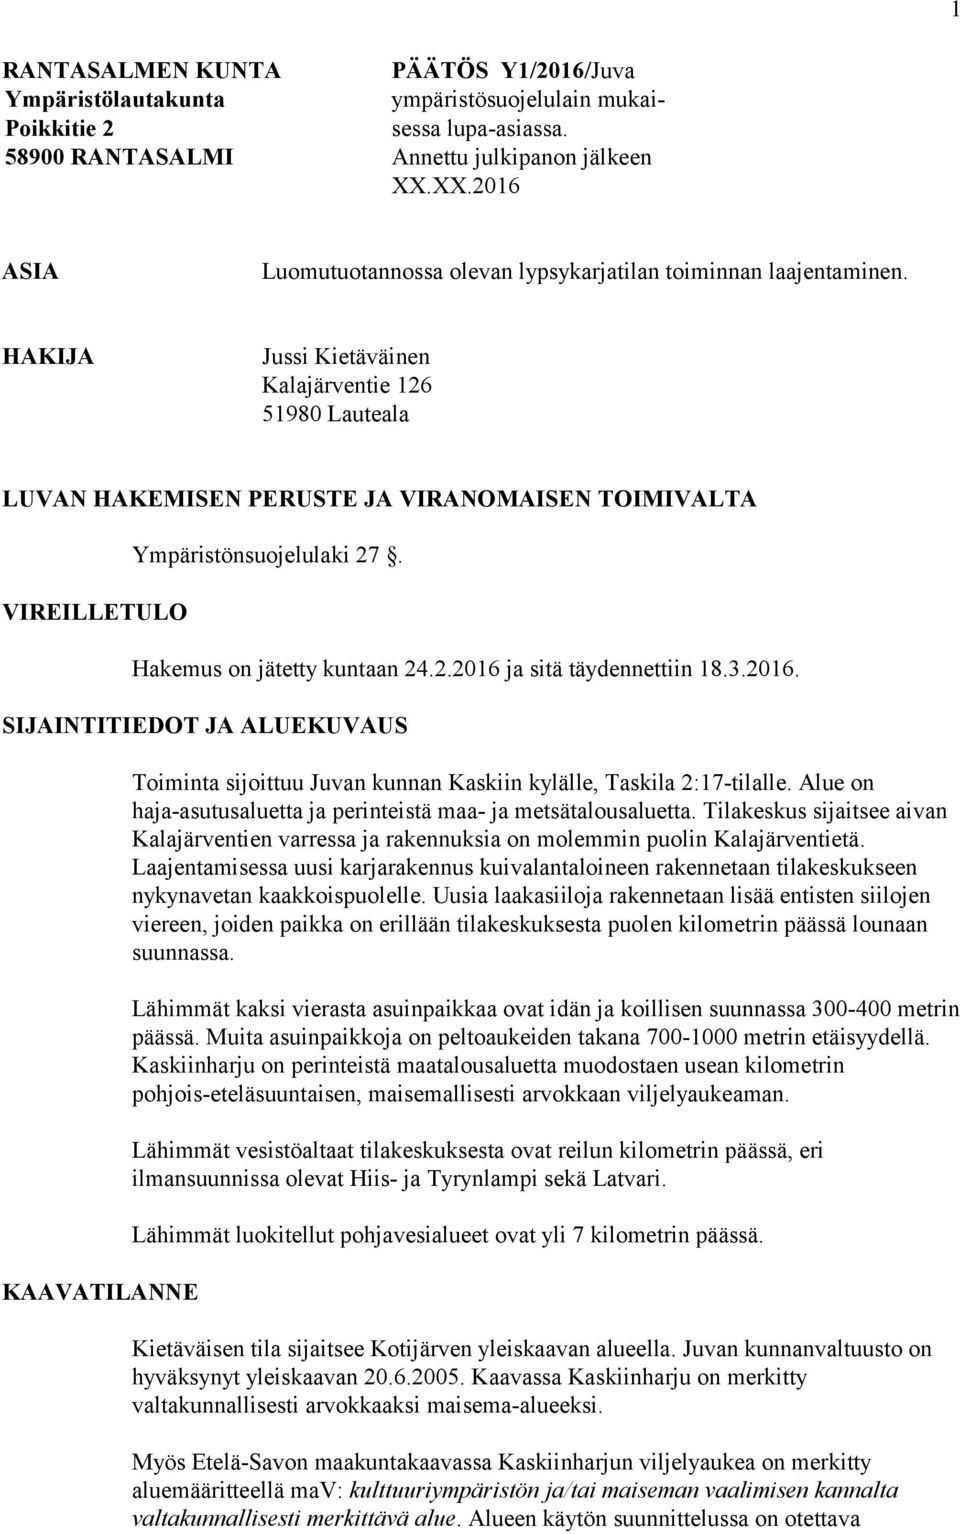 HAKIJA Jussi Kietäväinen Kalajärventie 126 51980 Lauteala LUVAN HAKEMISEN PERUSTE JA VIRANOMAISEN TOIMIVALTA VIREILLETULO Ympäristönsuojelulaki 27. Hakemus on jätetty kuntaan 24.2.2016 ja sitä täydennettiin 18.